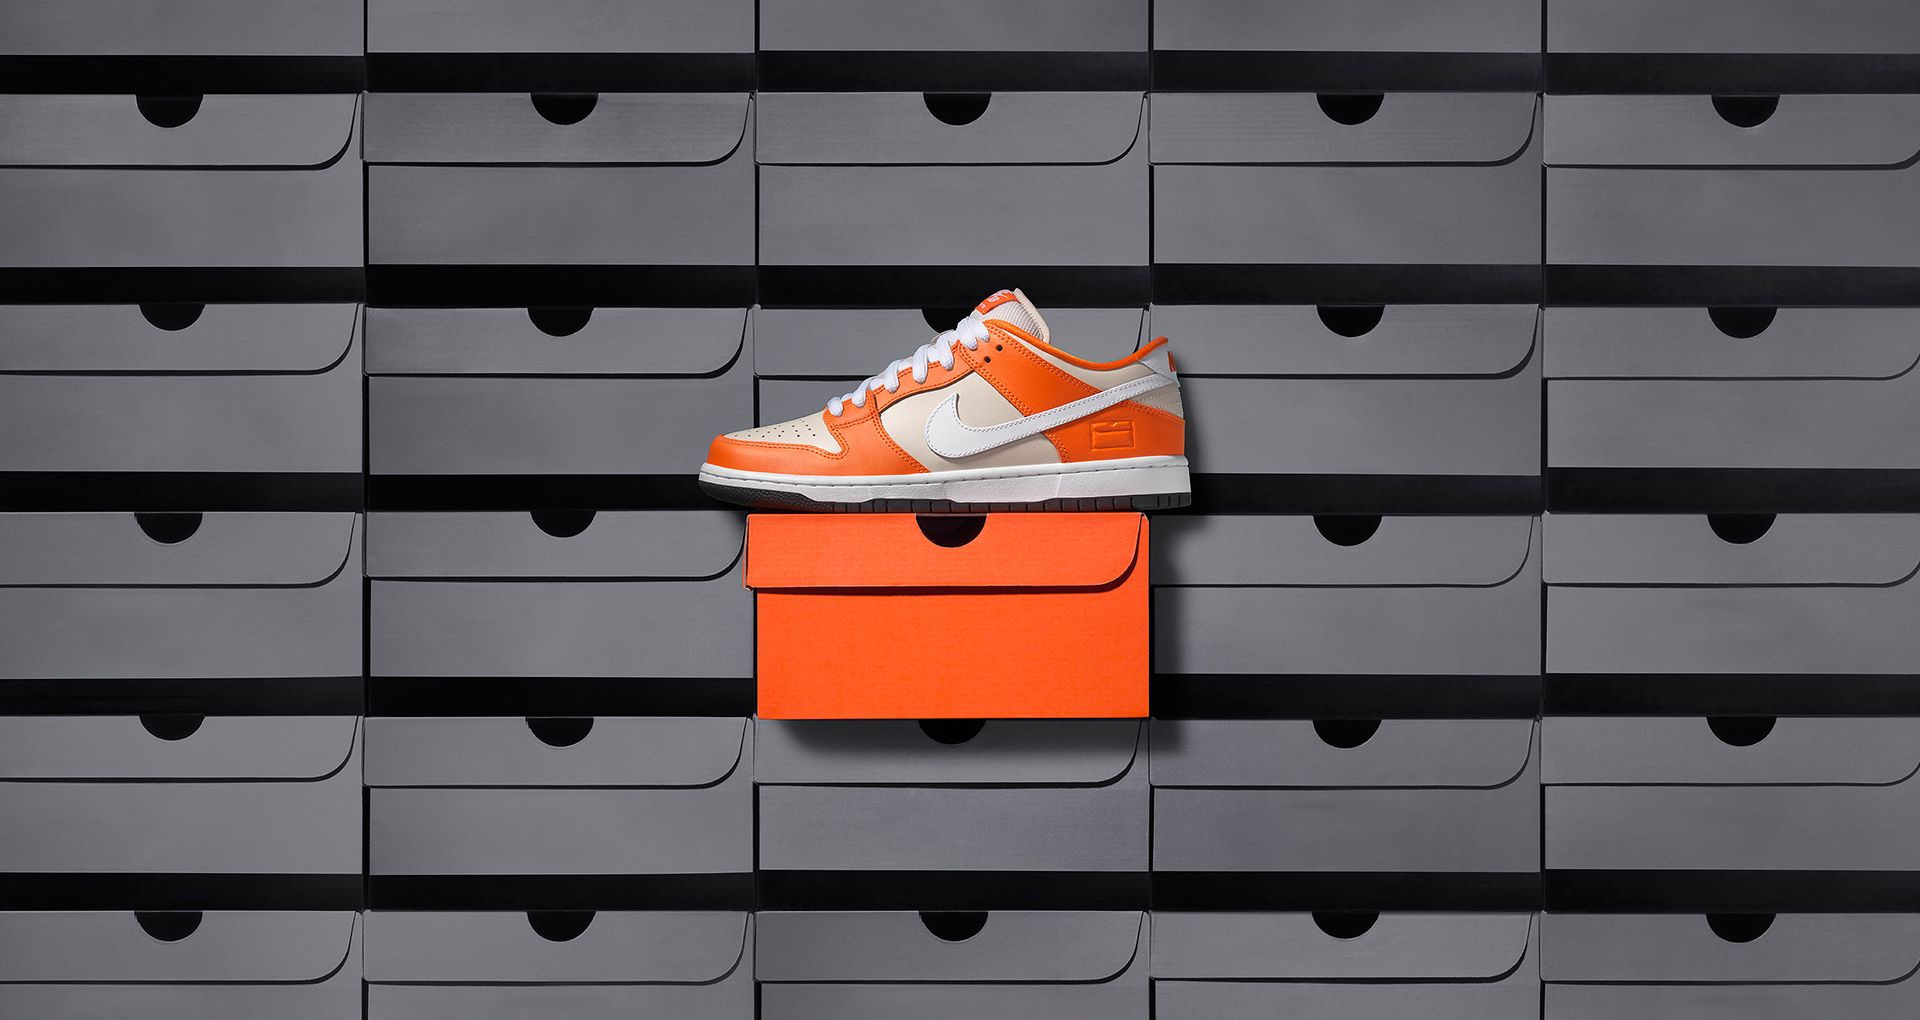 Найк бокс. Nike SB Dunk Low “Orange Box” 2017. Nike SB Dunk Low Box. Nike Orange Box. Nike Dunk Low коробка.